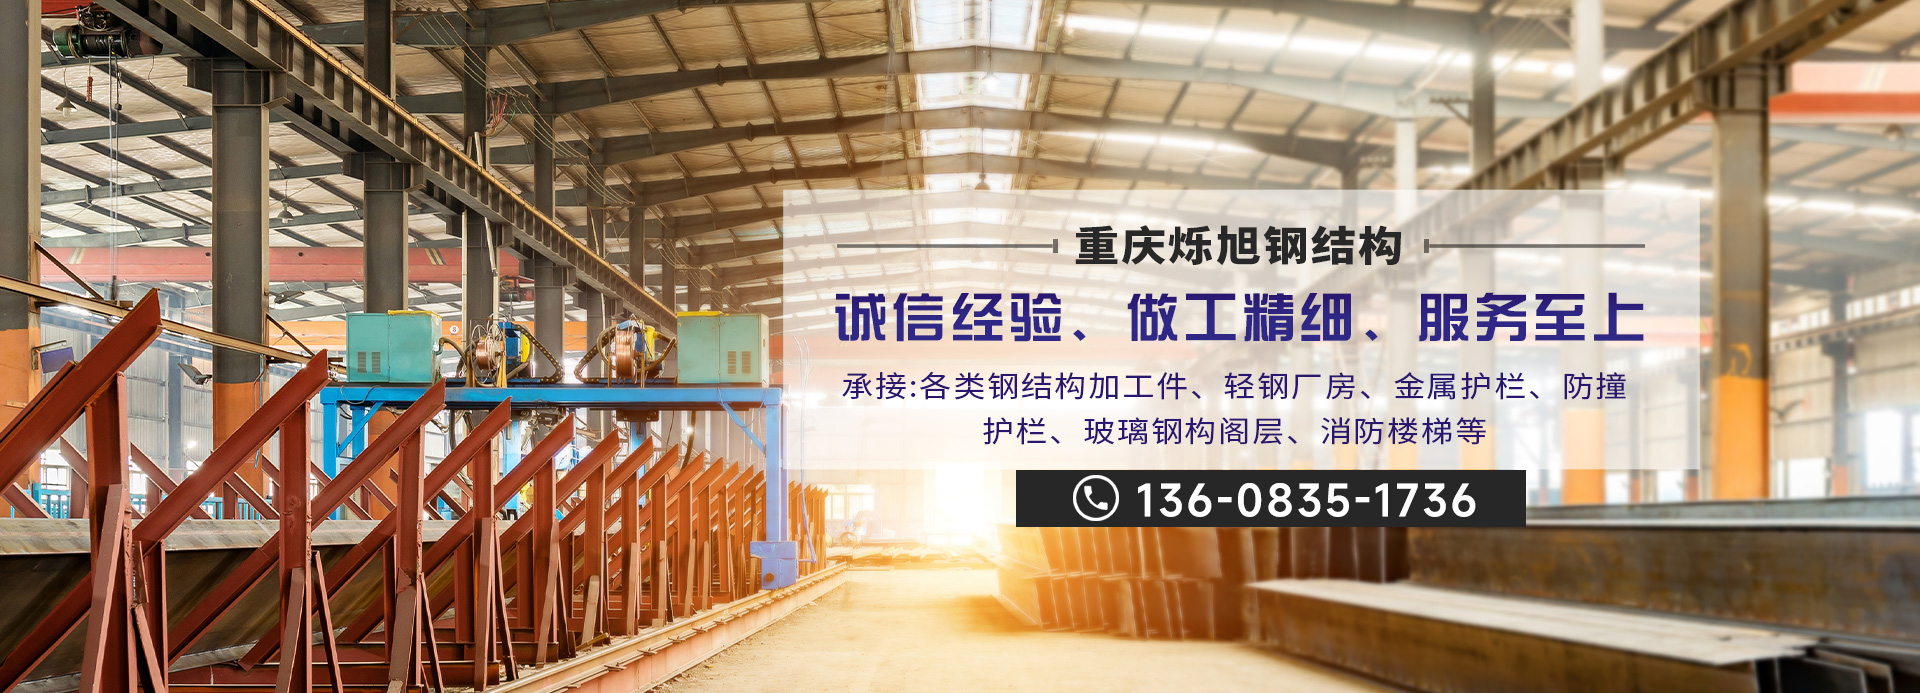 重庆钢材市场